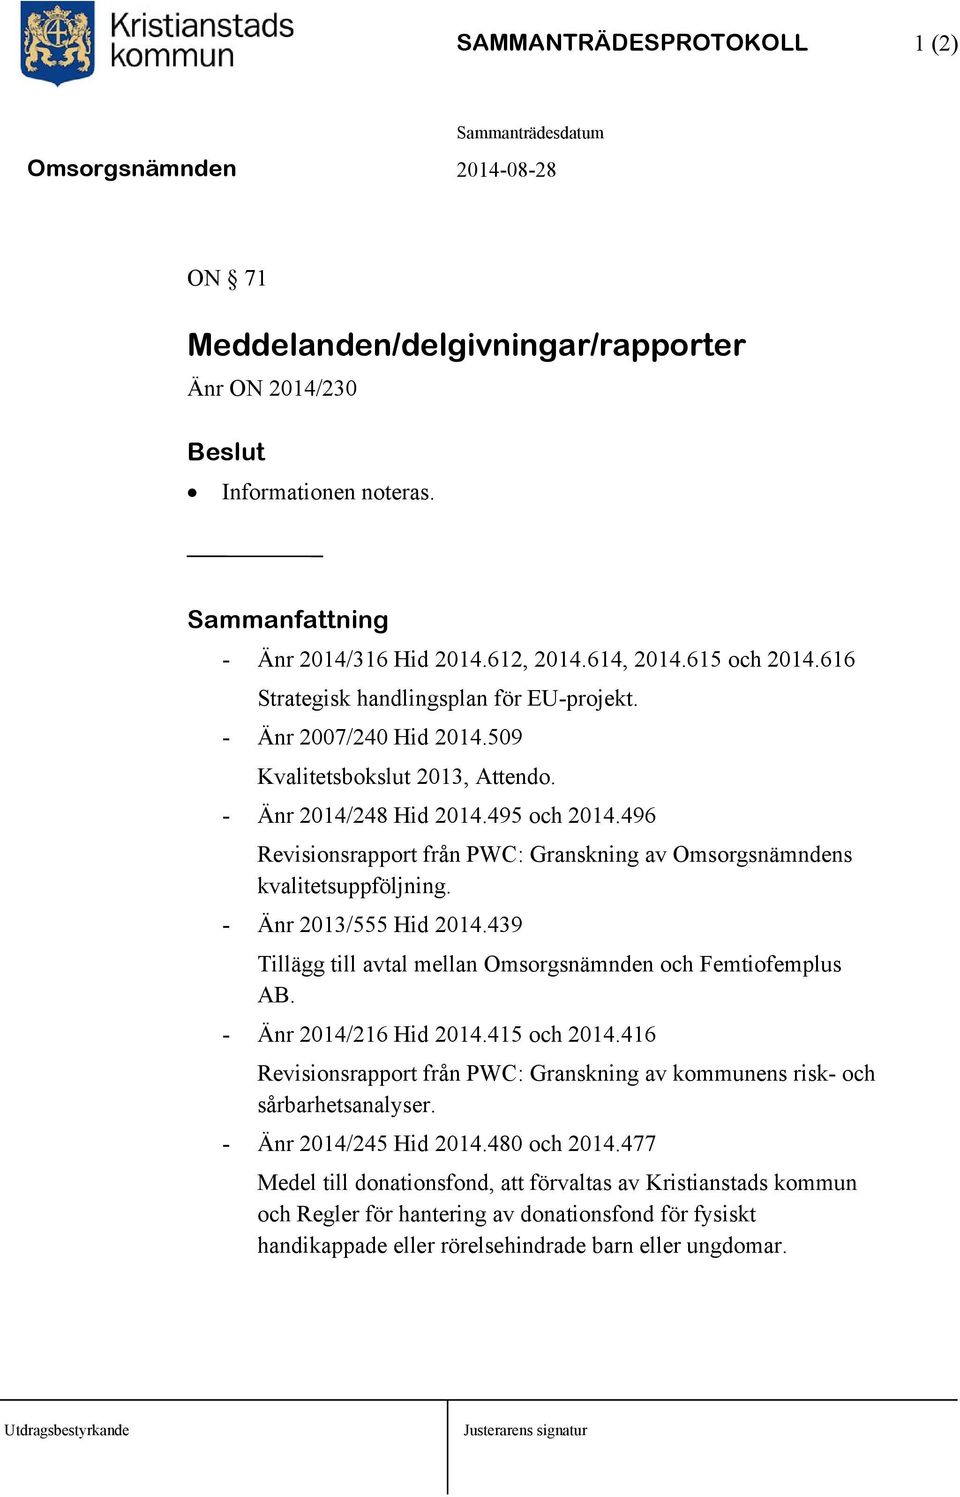 496 Revisionsrapport från PWC: Granskning av Omsorgsnämndens kvalitetsuppföljning. - Änr 2013/555 Hid 2014.439 Tillägg till avtal mellan Omsorgsnämnden och Femtiofemplus AB. - Änr 2014/216 Hid 2014.